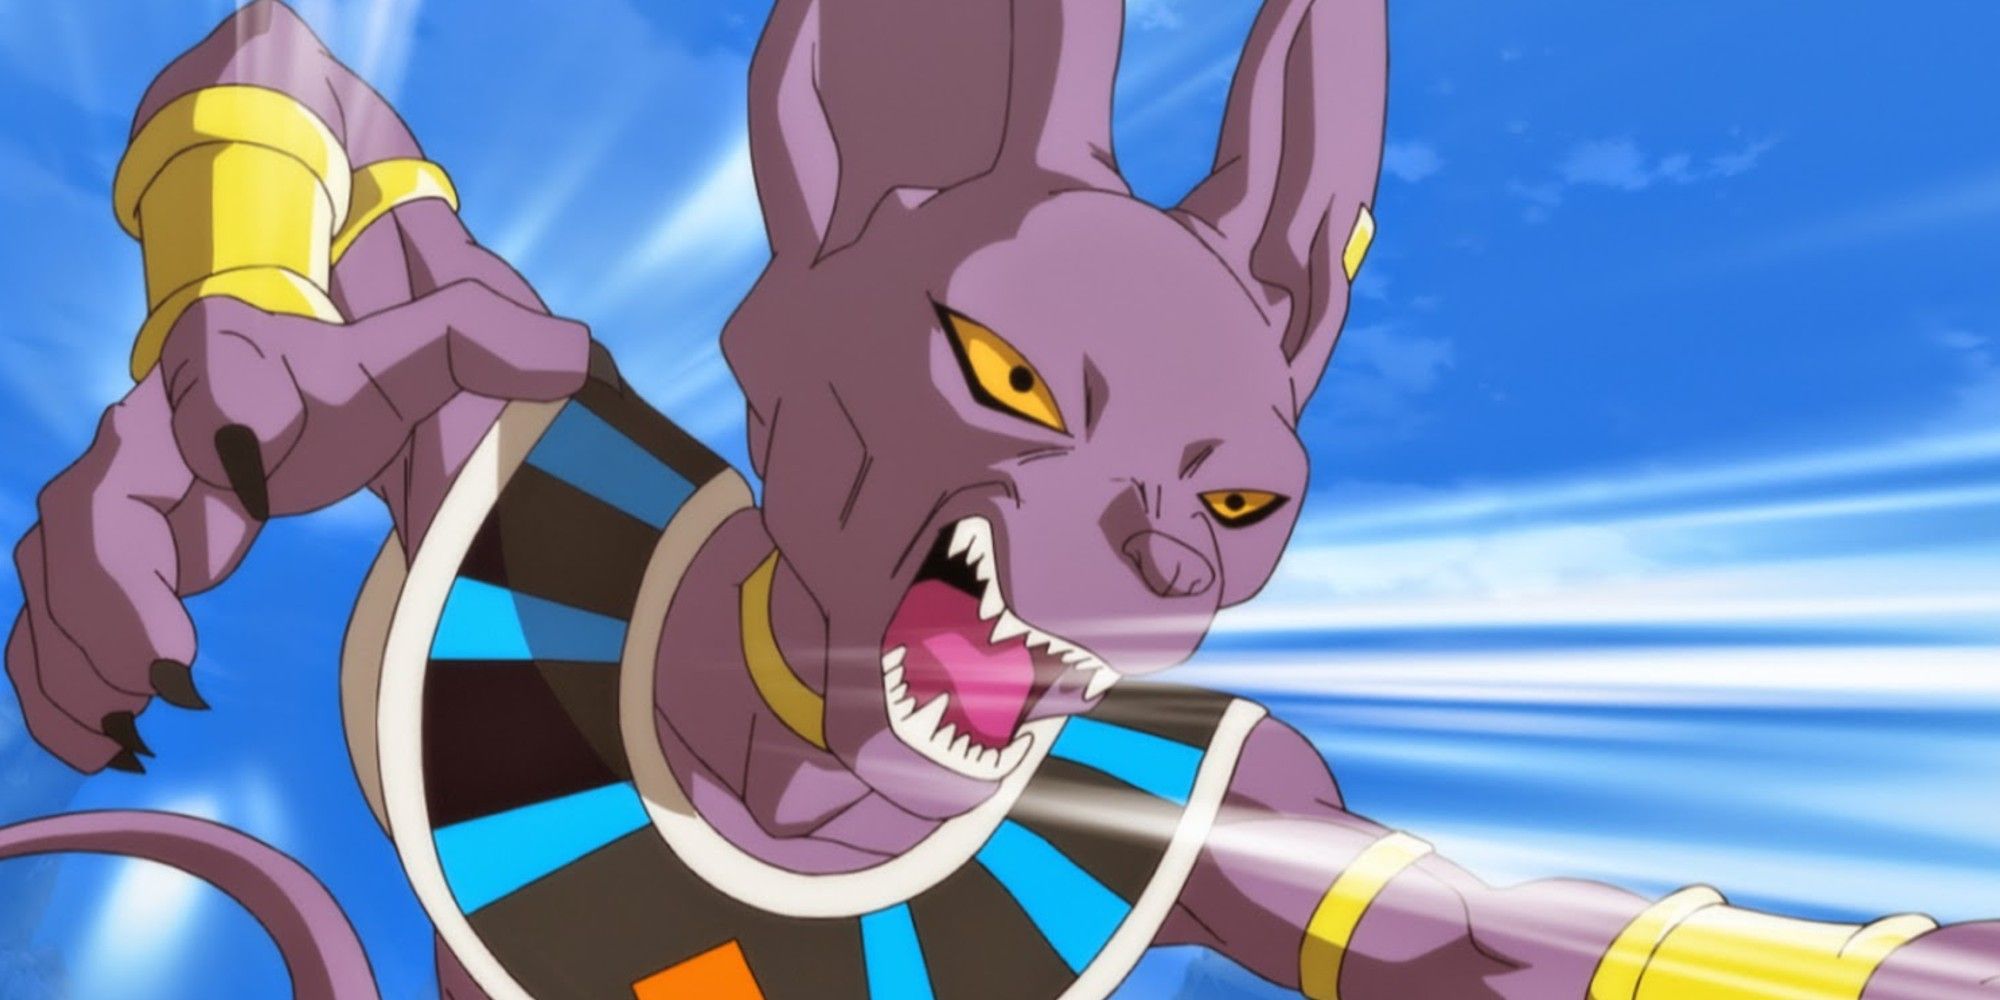 Lord Beerus charging Goku in Dragon Ball Super.